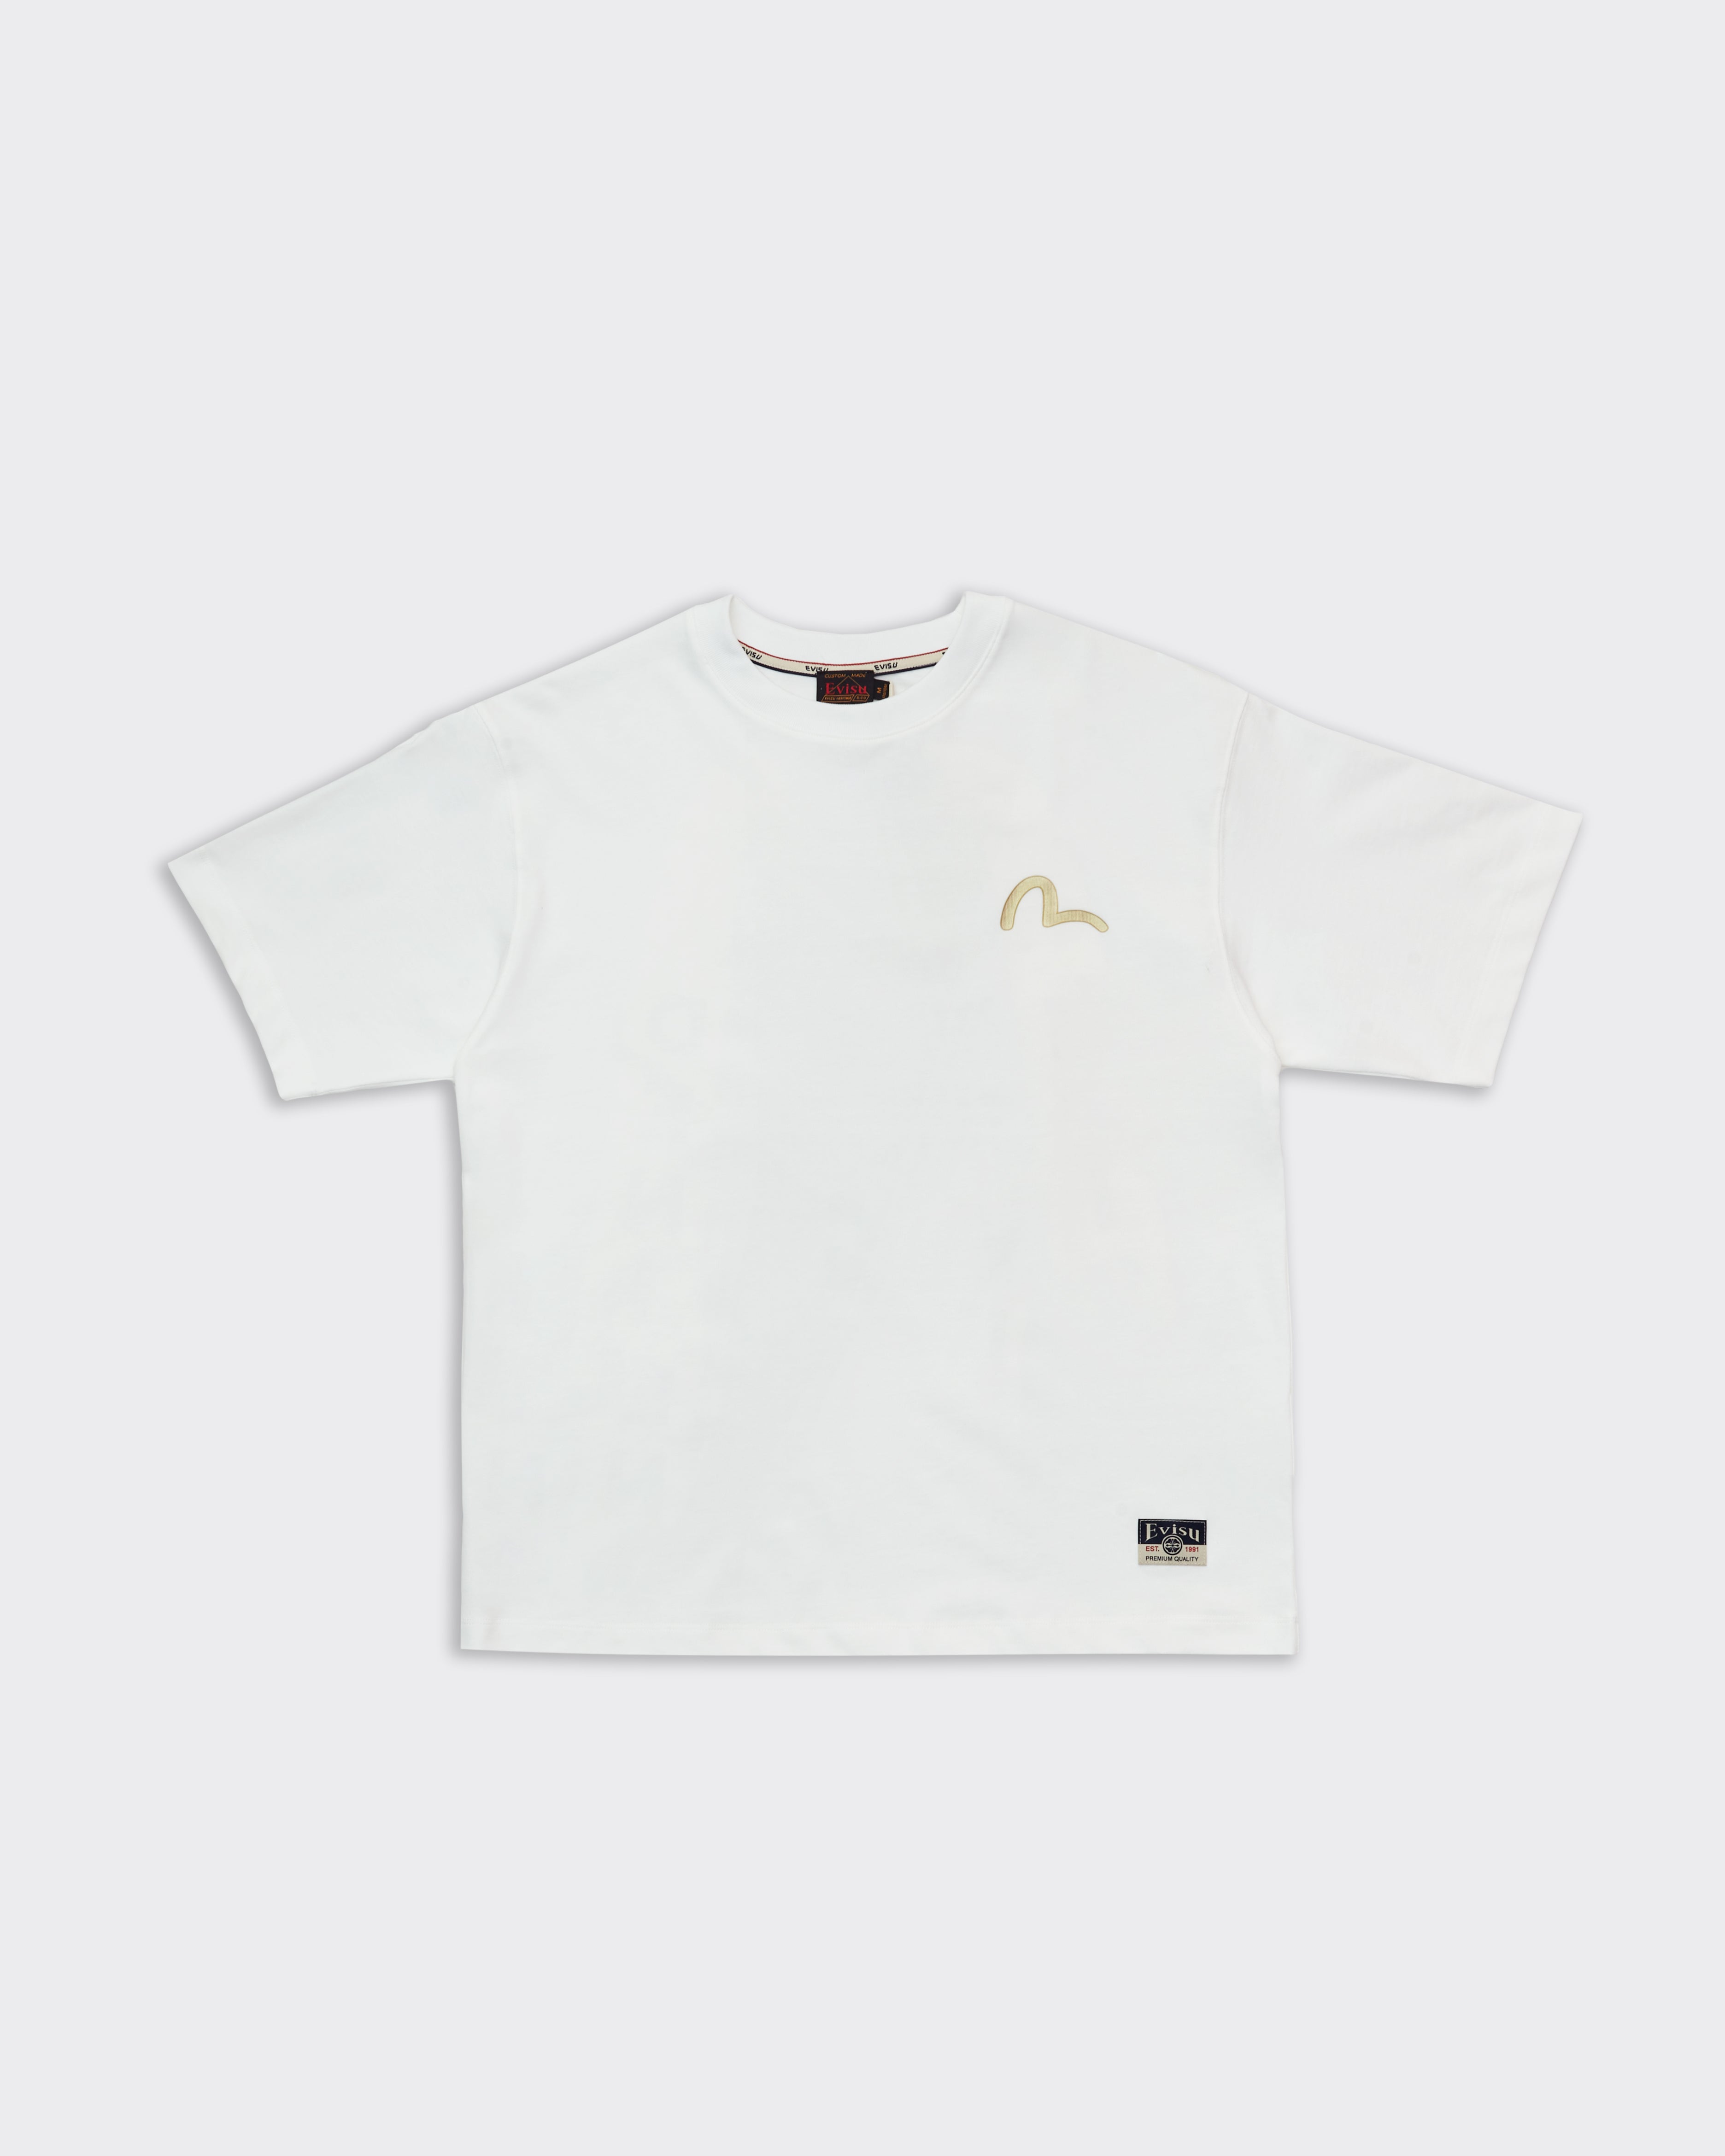 Seagull & Wave Daicock Print T-Shirt White